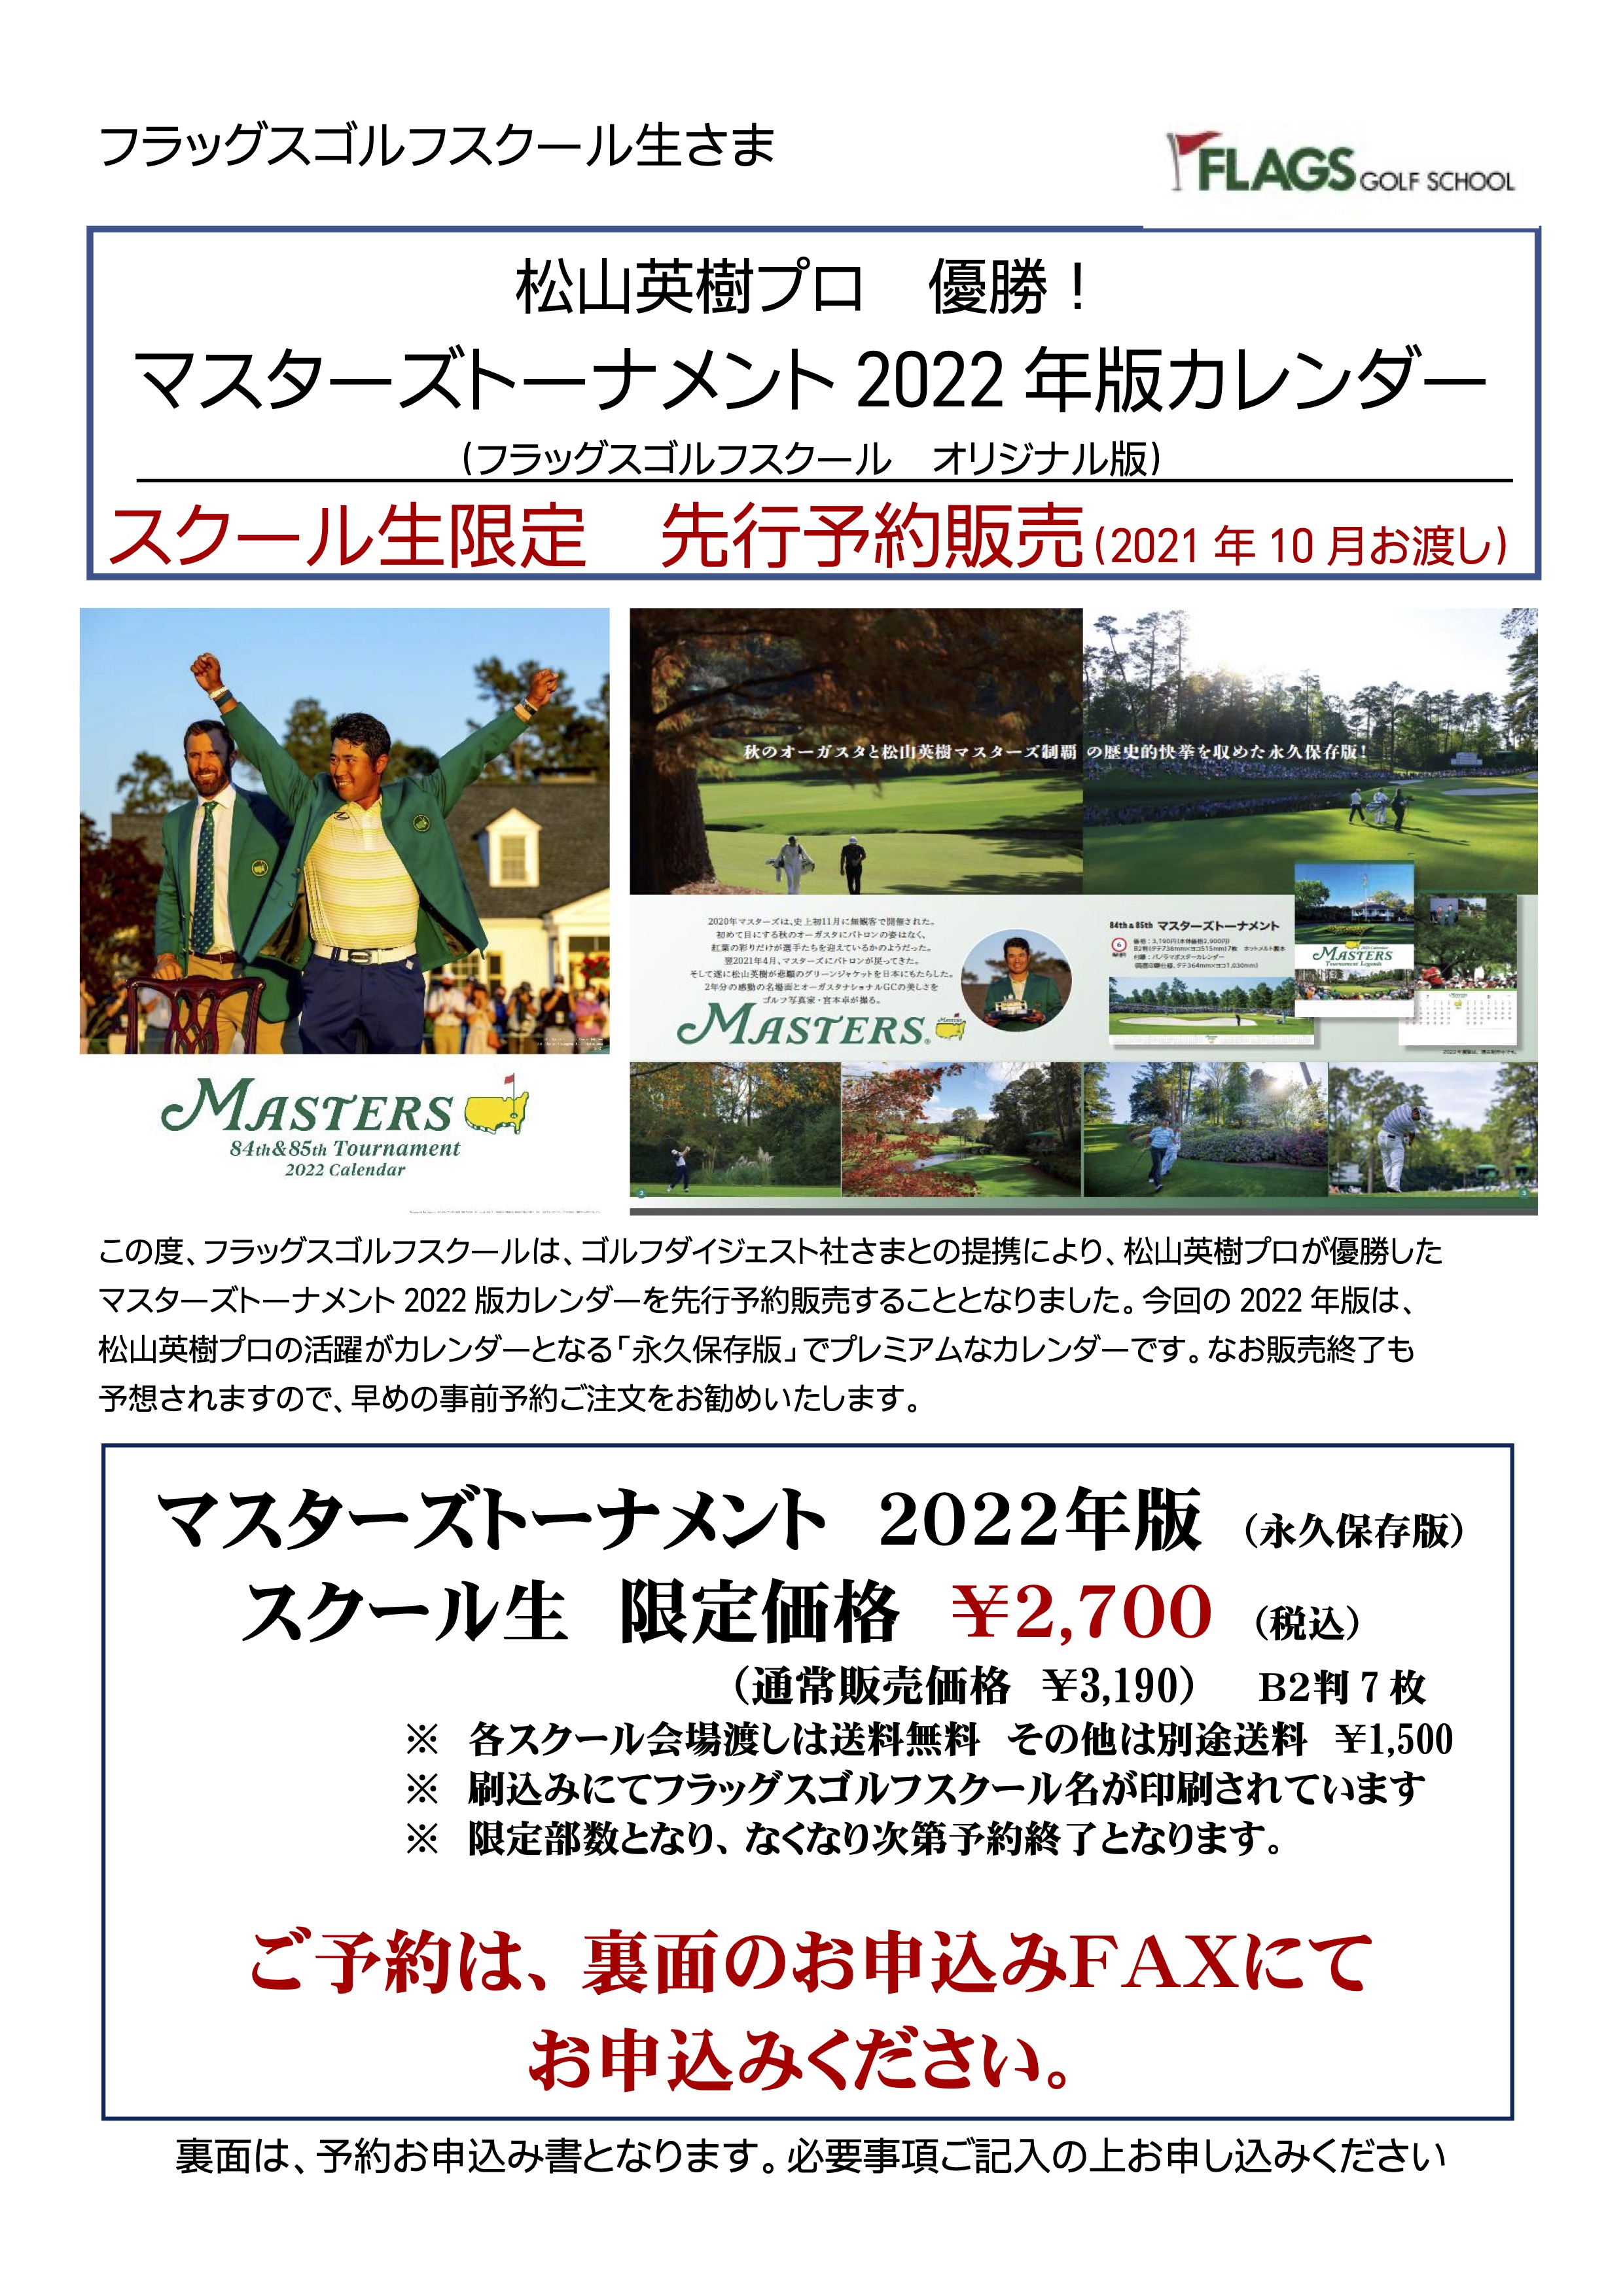 スクール生限定 永久保存版 マスターズ22年版カレンダー 先行予約販売中 フラッグス ゴルフスクール